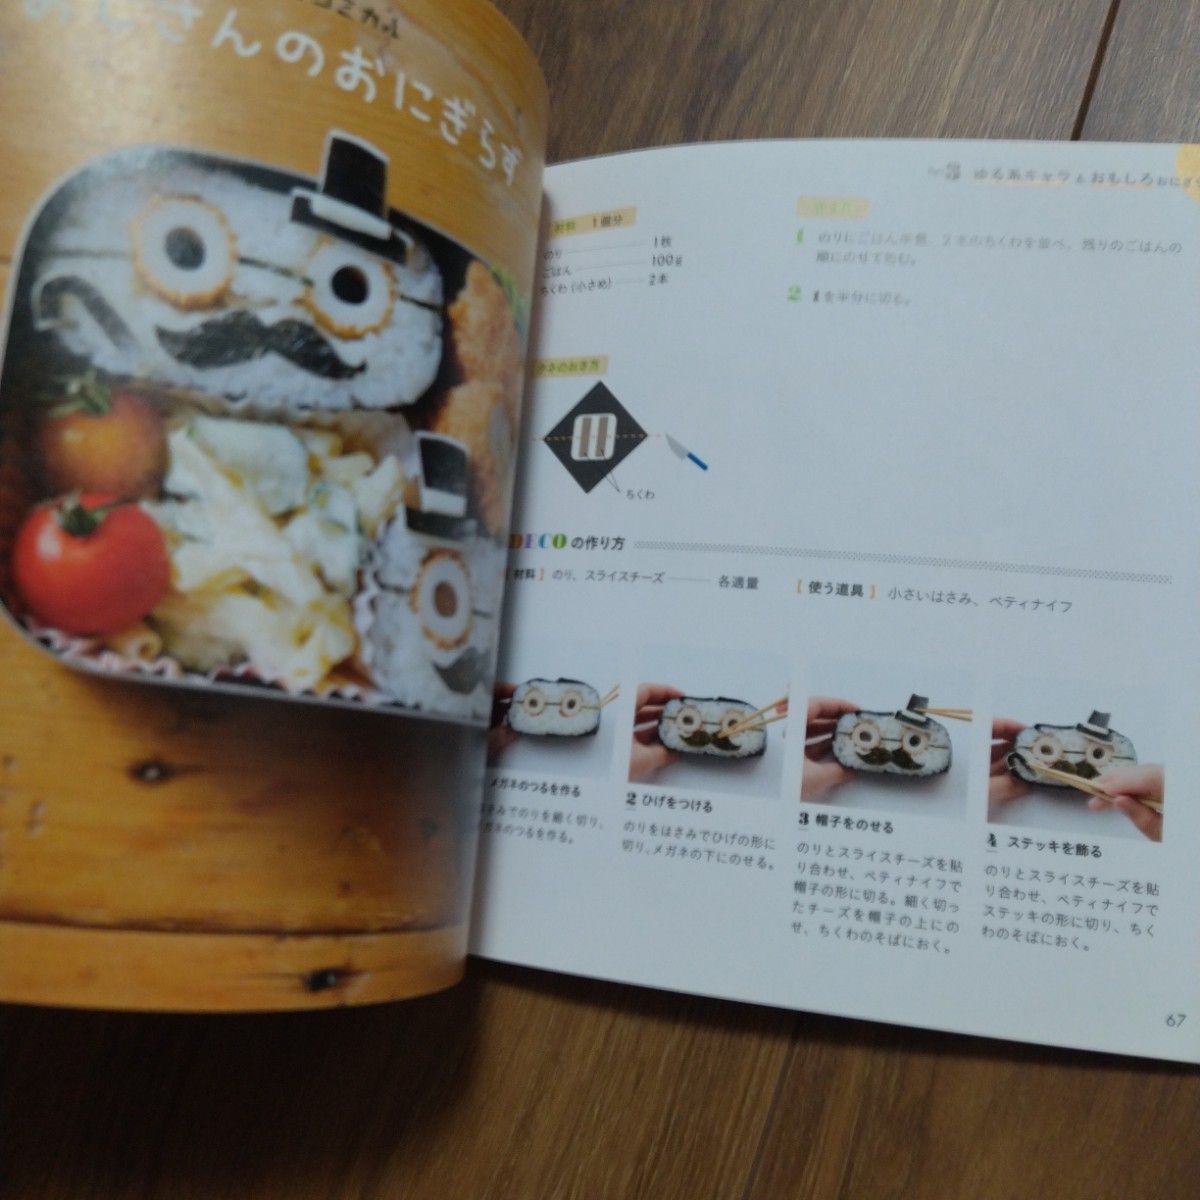 おにぎらずDECO 41レシピ 宝島社 しらいしやすこ 弁当　キャラ弁 デコ弁 料理本 作りおき